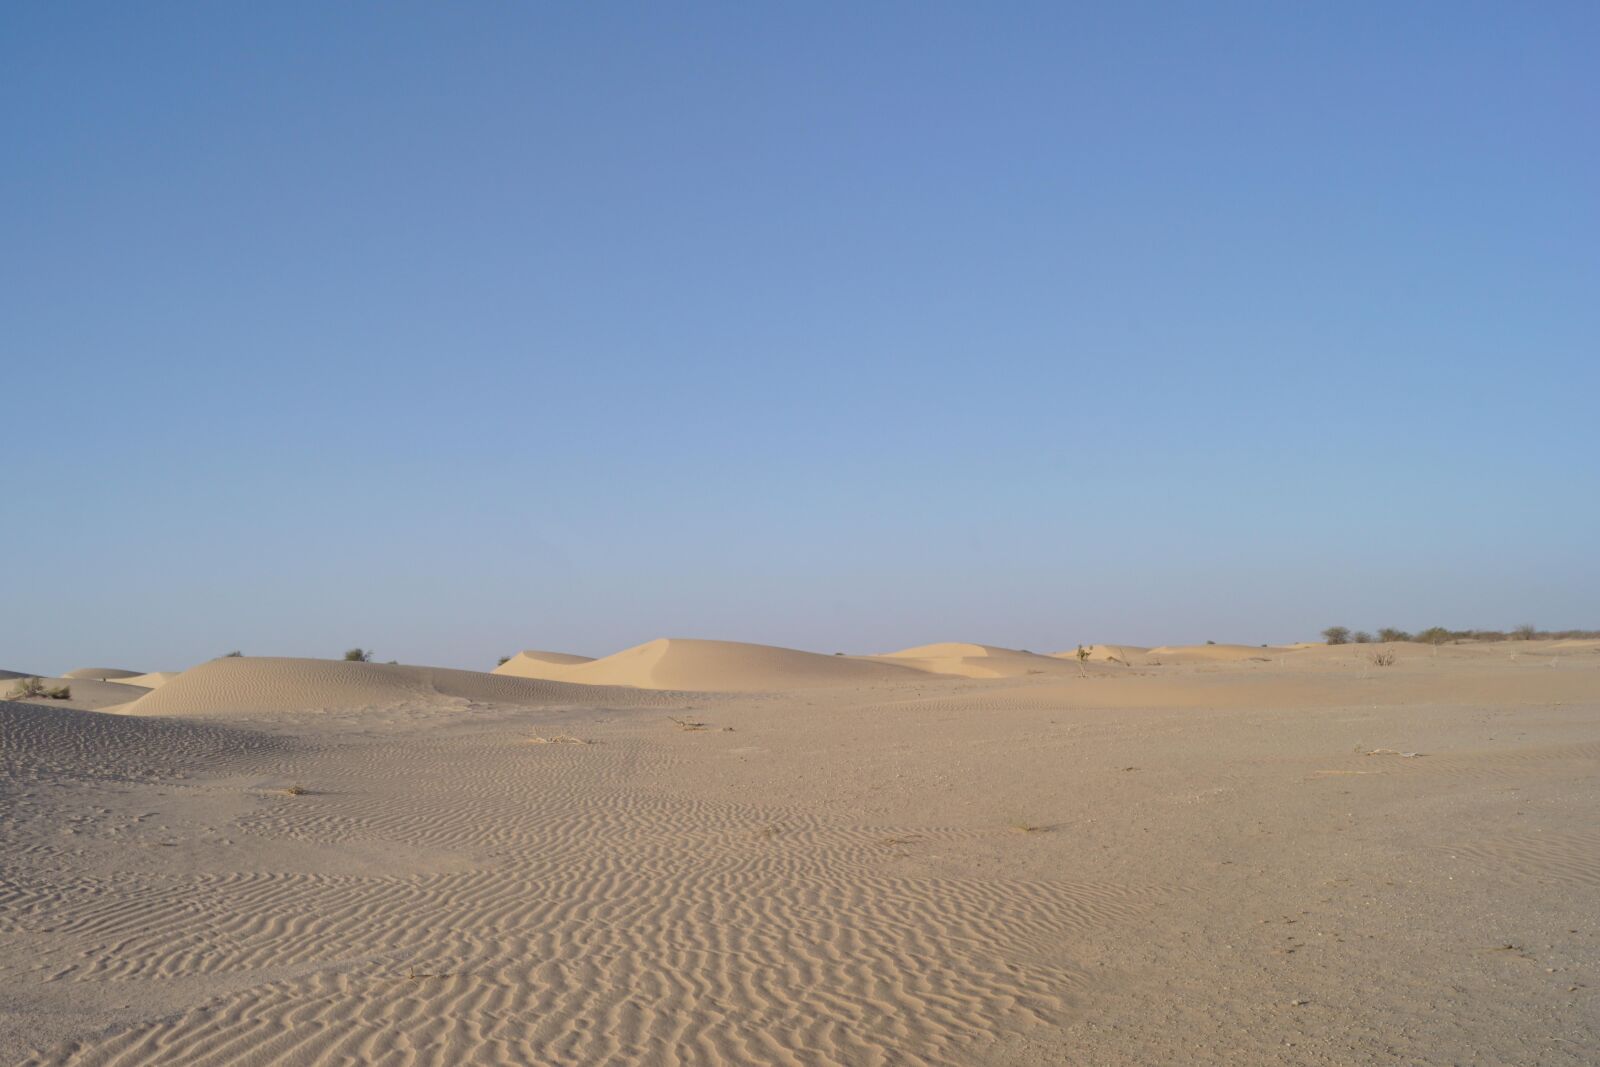 Sony DT 18-55mm F3.5-5.6 SAM II sample photo. Desert, sand, dry photography